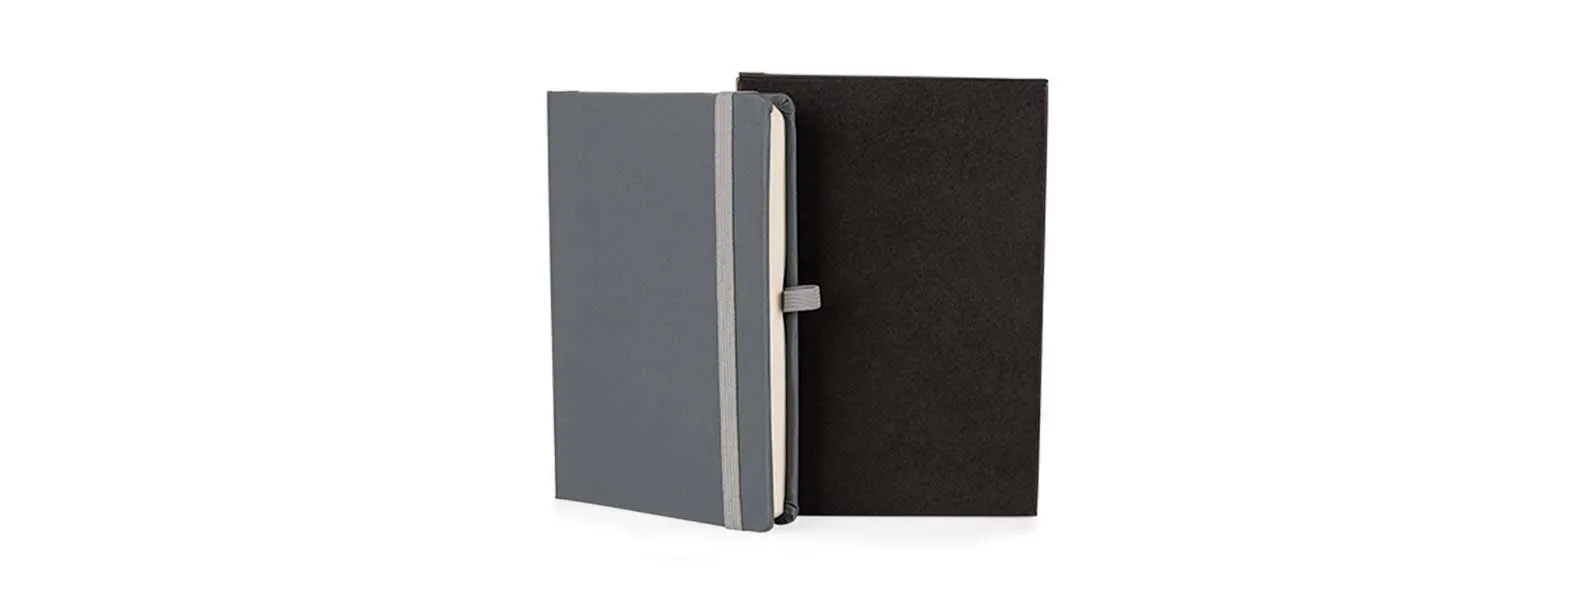 Caderno para anotações cinza com capa dura. Conta com 80 folhas pautadas, marcador de página, porta caneta e elástico para fechamento. Gramatura da folha de 70 g/m2.